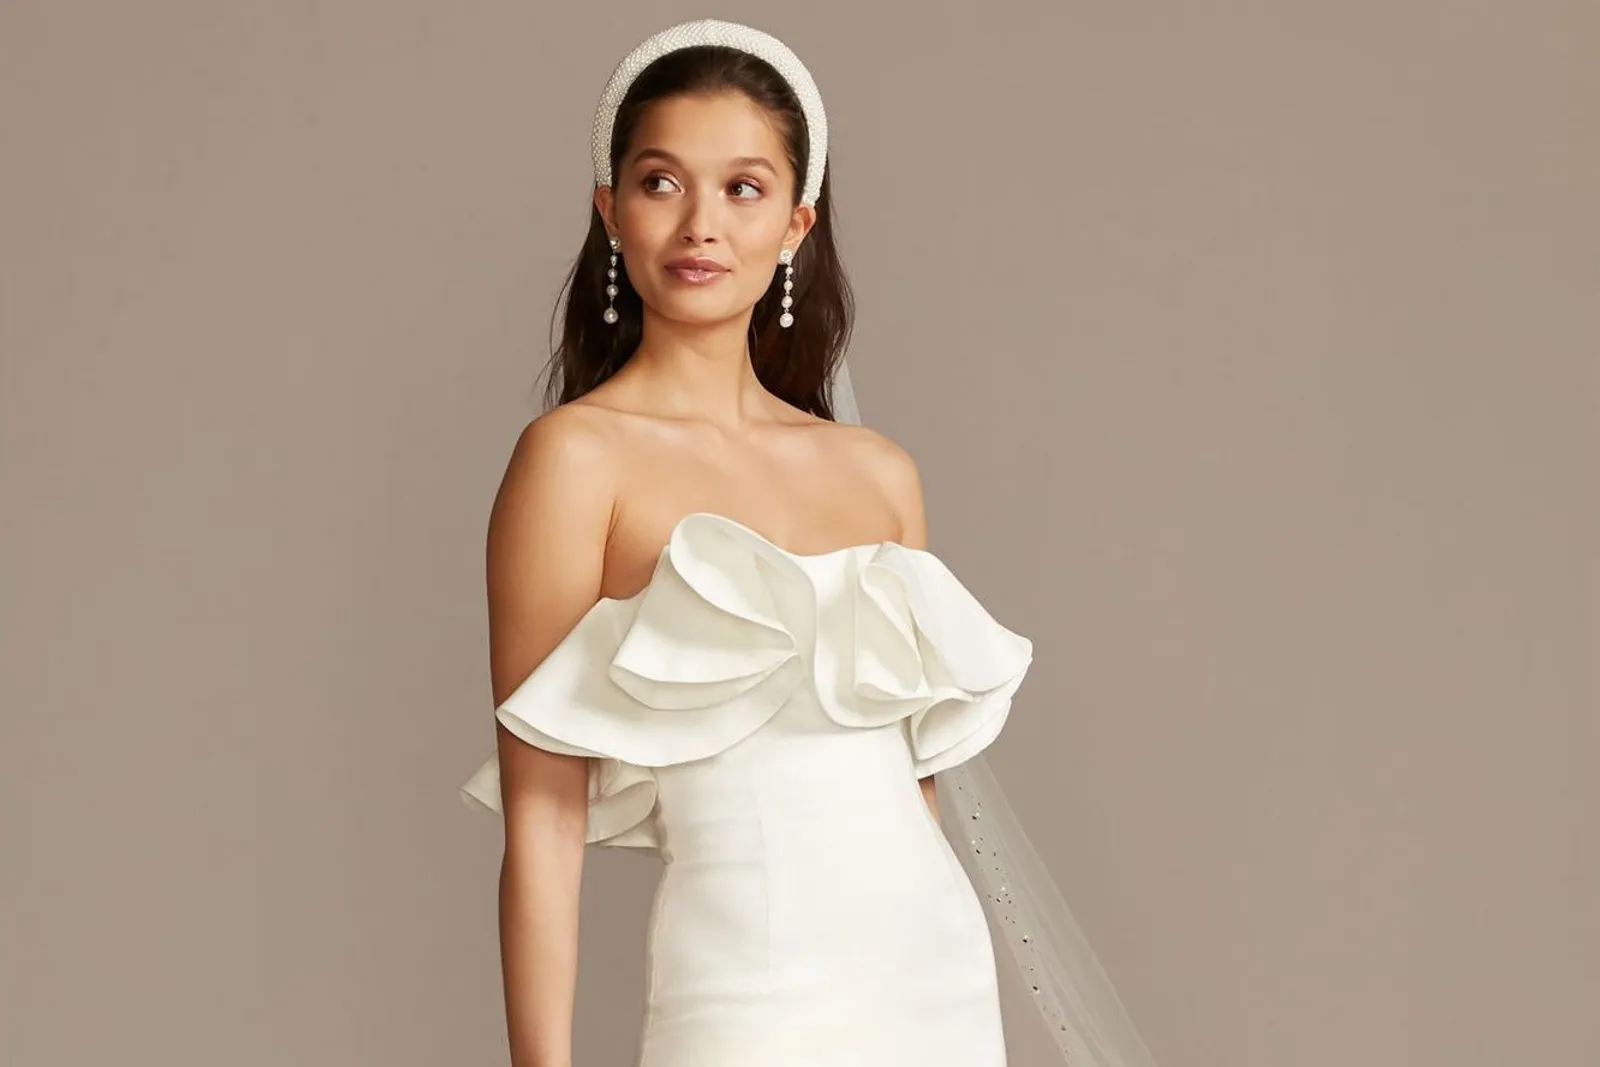 Inspirasi Model Dress Pendek untuk Pernikahan